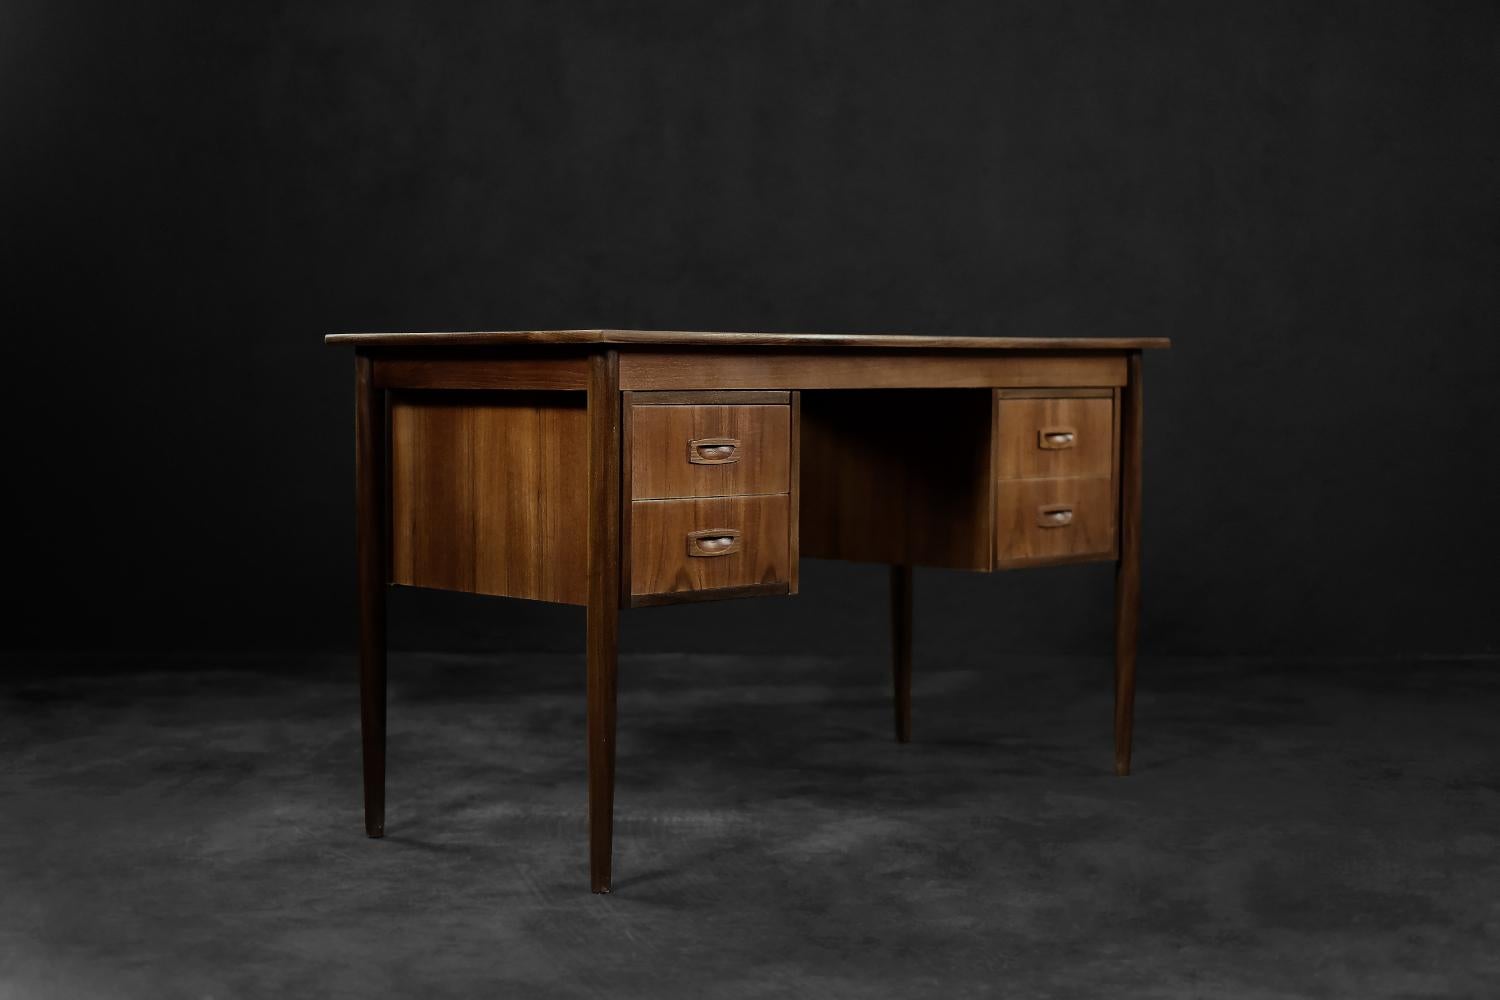 Ce bureau classique a été fabriqué au Danemark dans les années 1960. Il a été réalisé en bois de teck dans une teinte brune chaude, avec des détails de grain visibles. Le bureau comporte quatre tiroirs. Deux de chaque côté. Les pieds fins et hauts